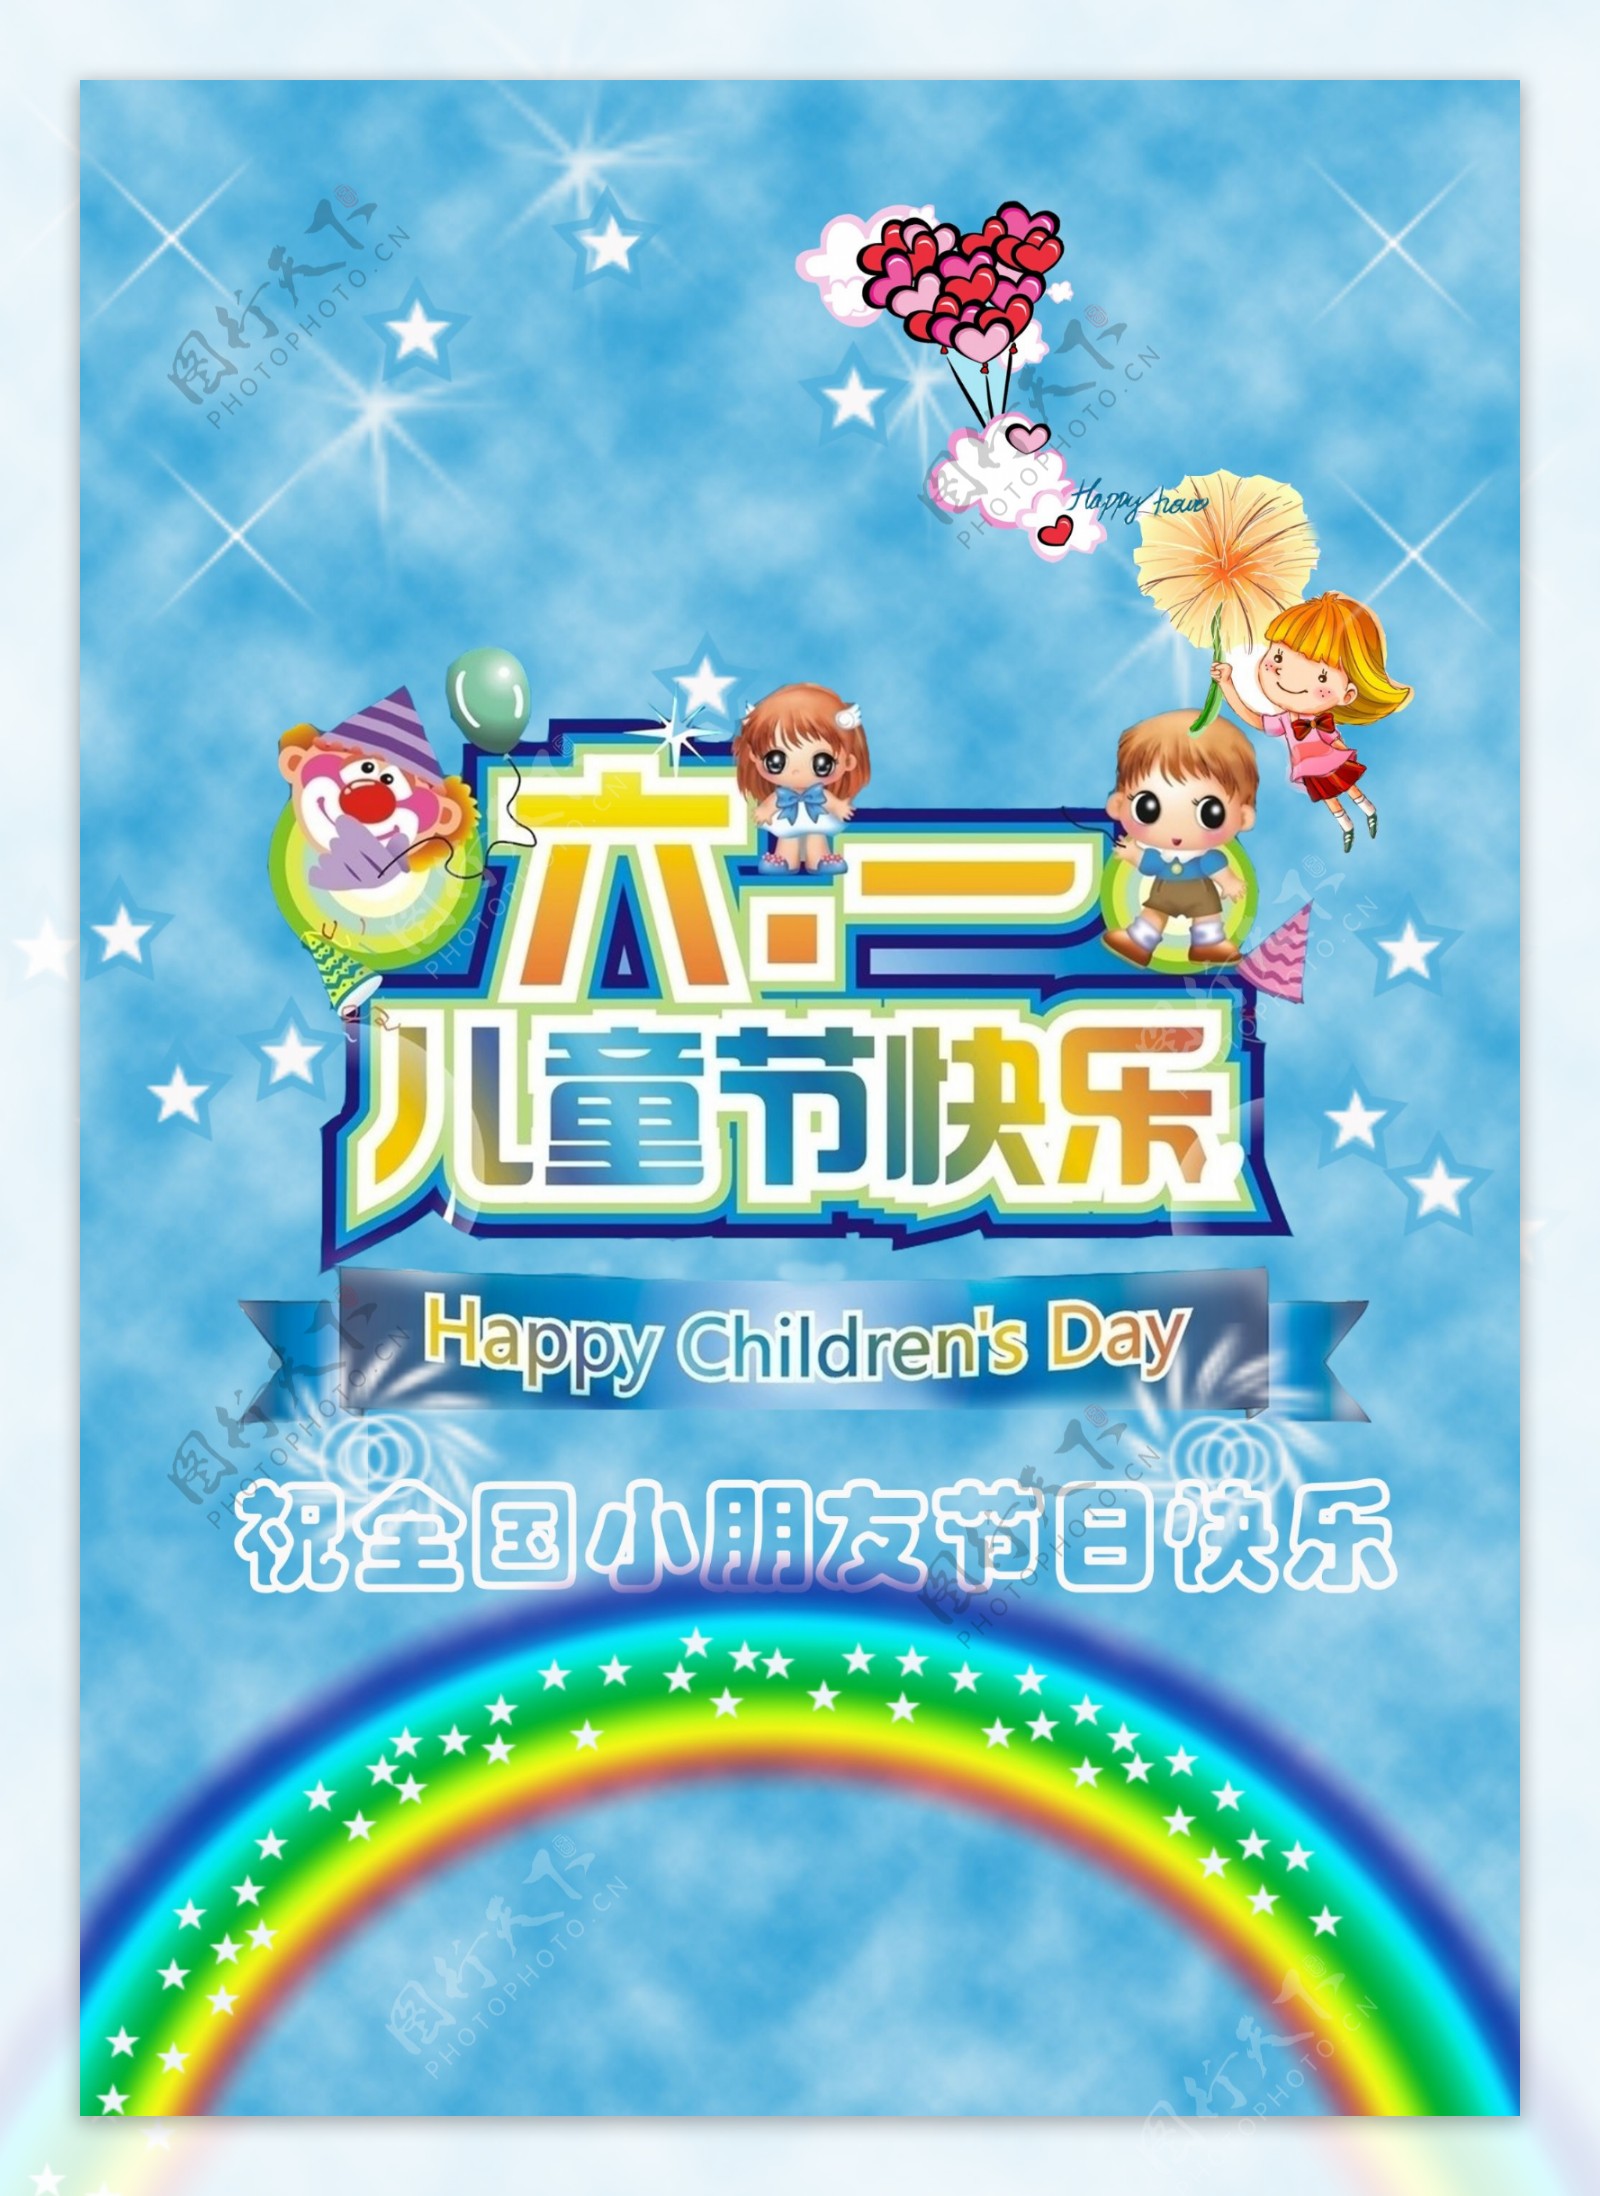 六一儿童节快乐海报背景PSD素材